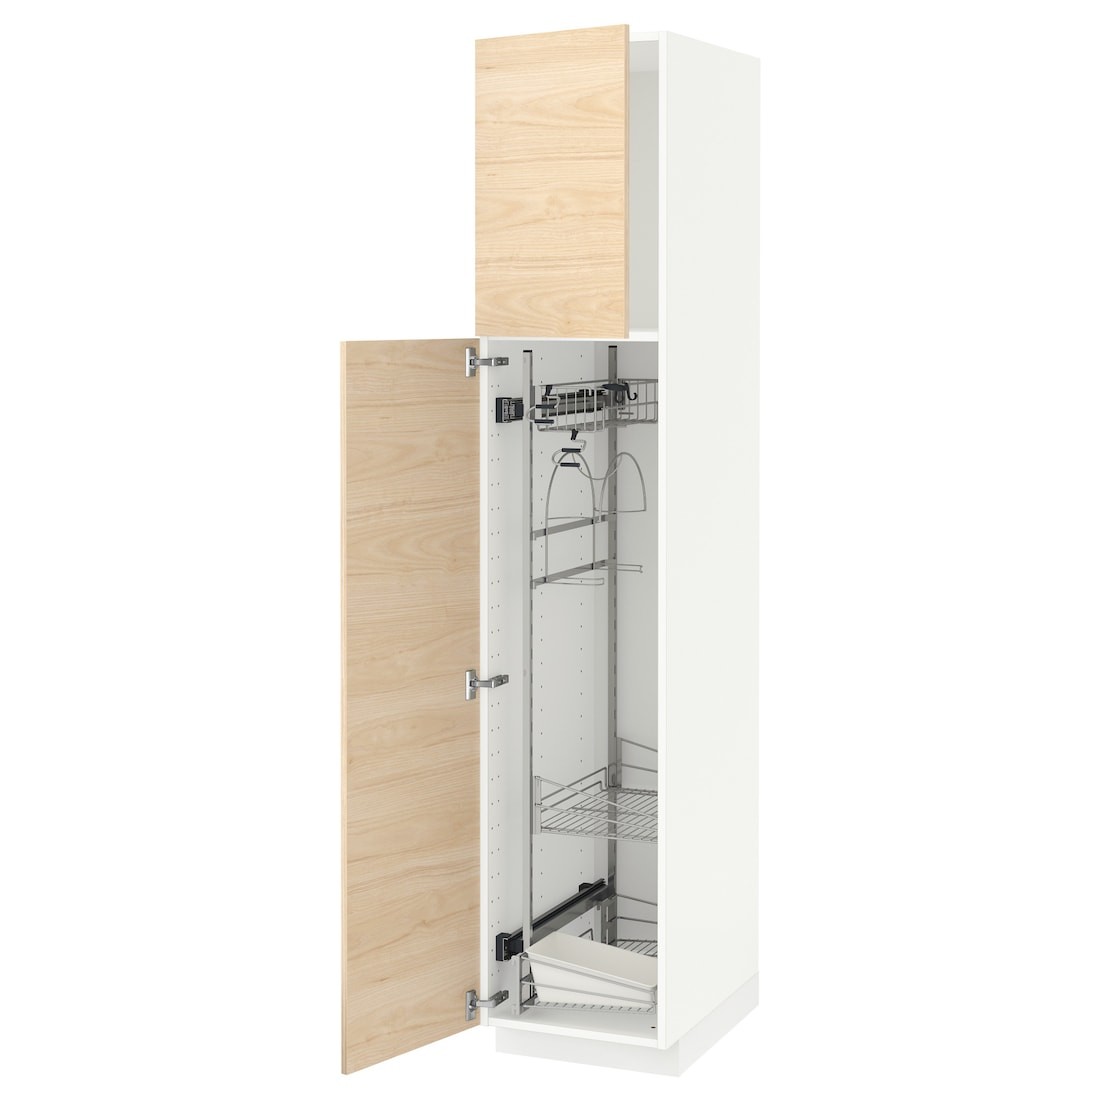 METOD МЕТОД Высокий шкаф с отделением для аксессуаров для уборки, белый / Askersund узор светлый ясень, 40x60x200 см